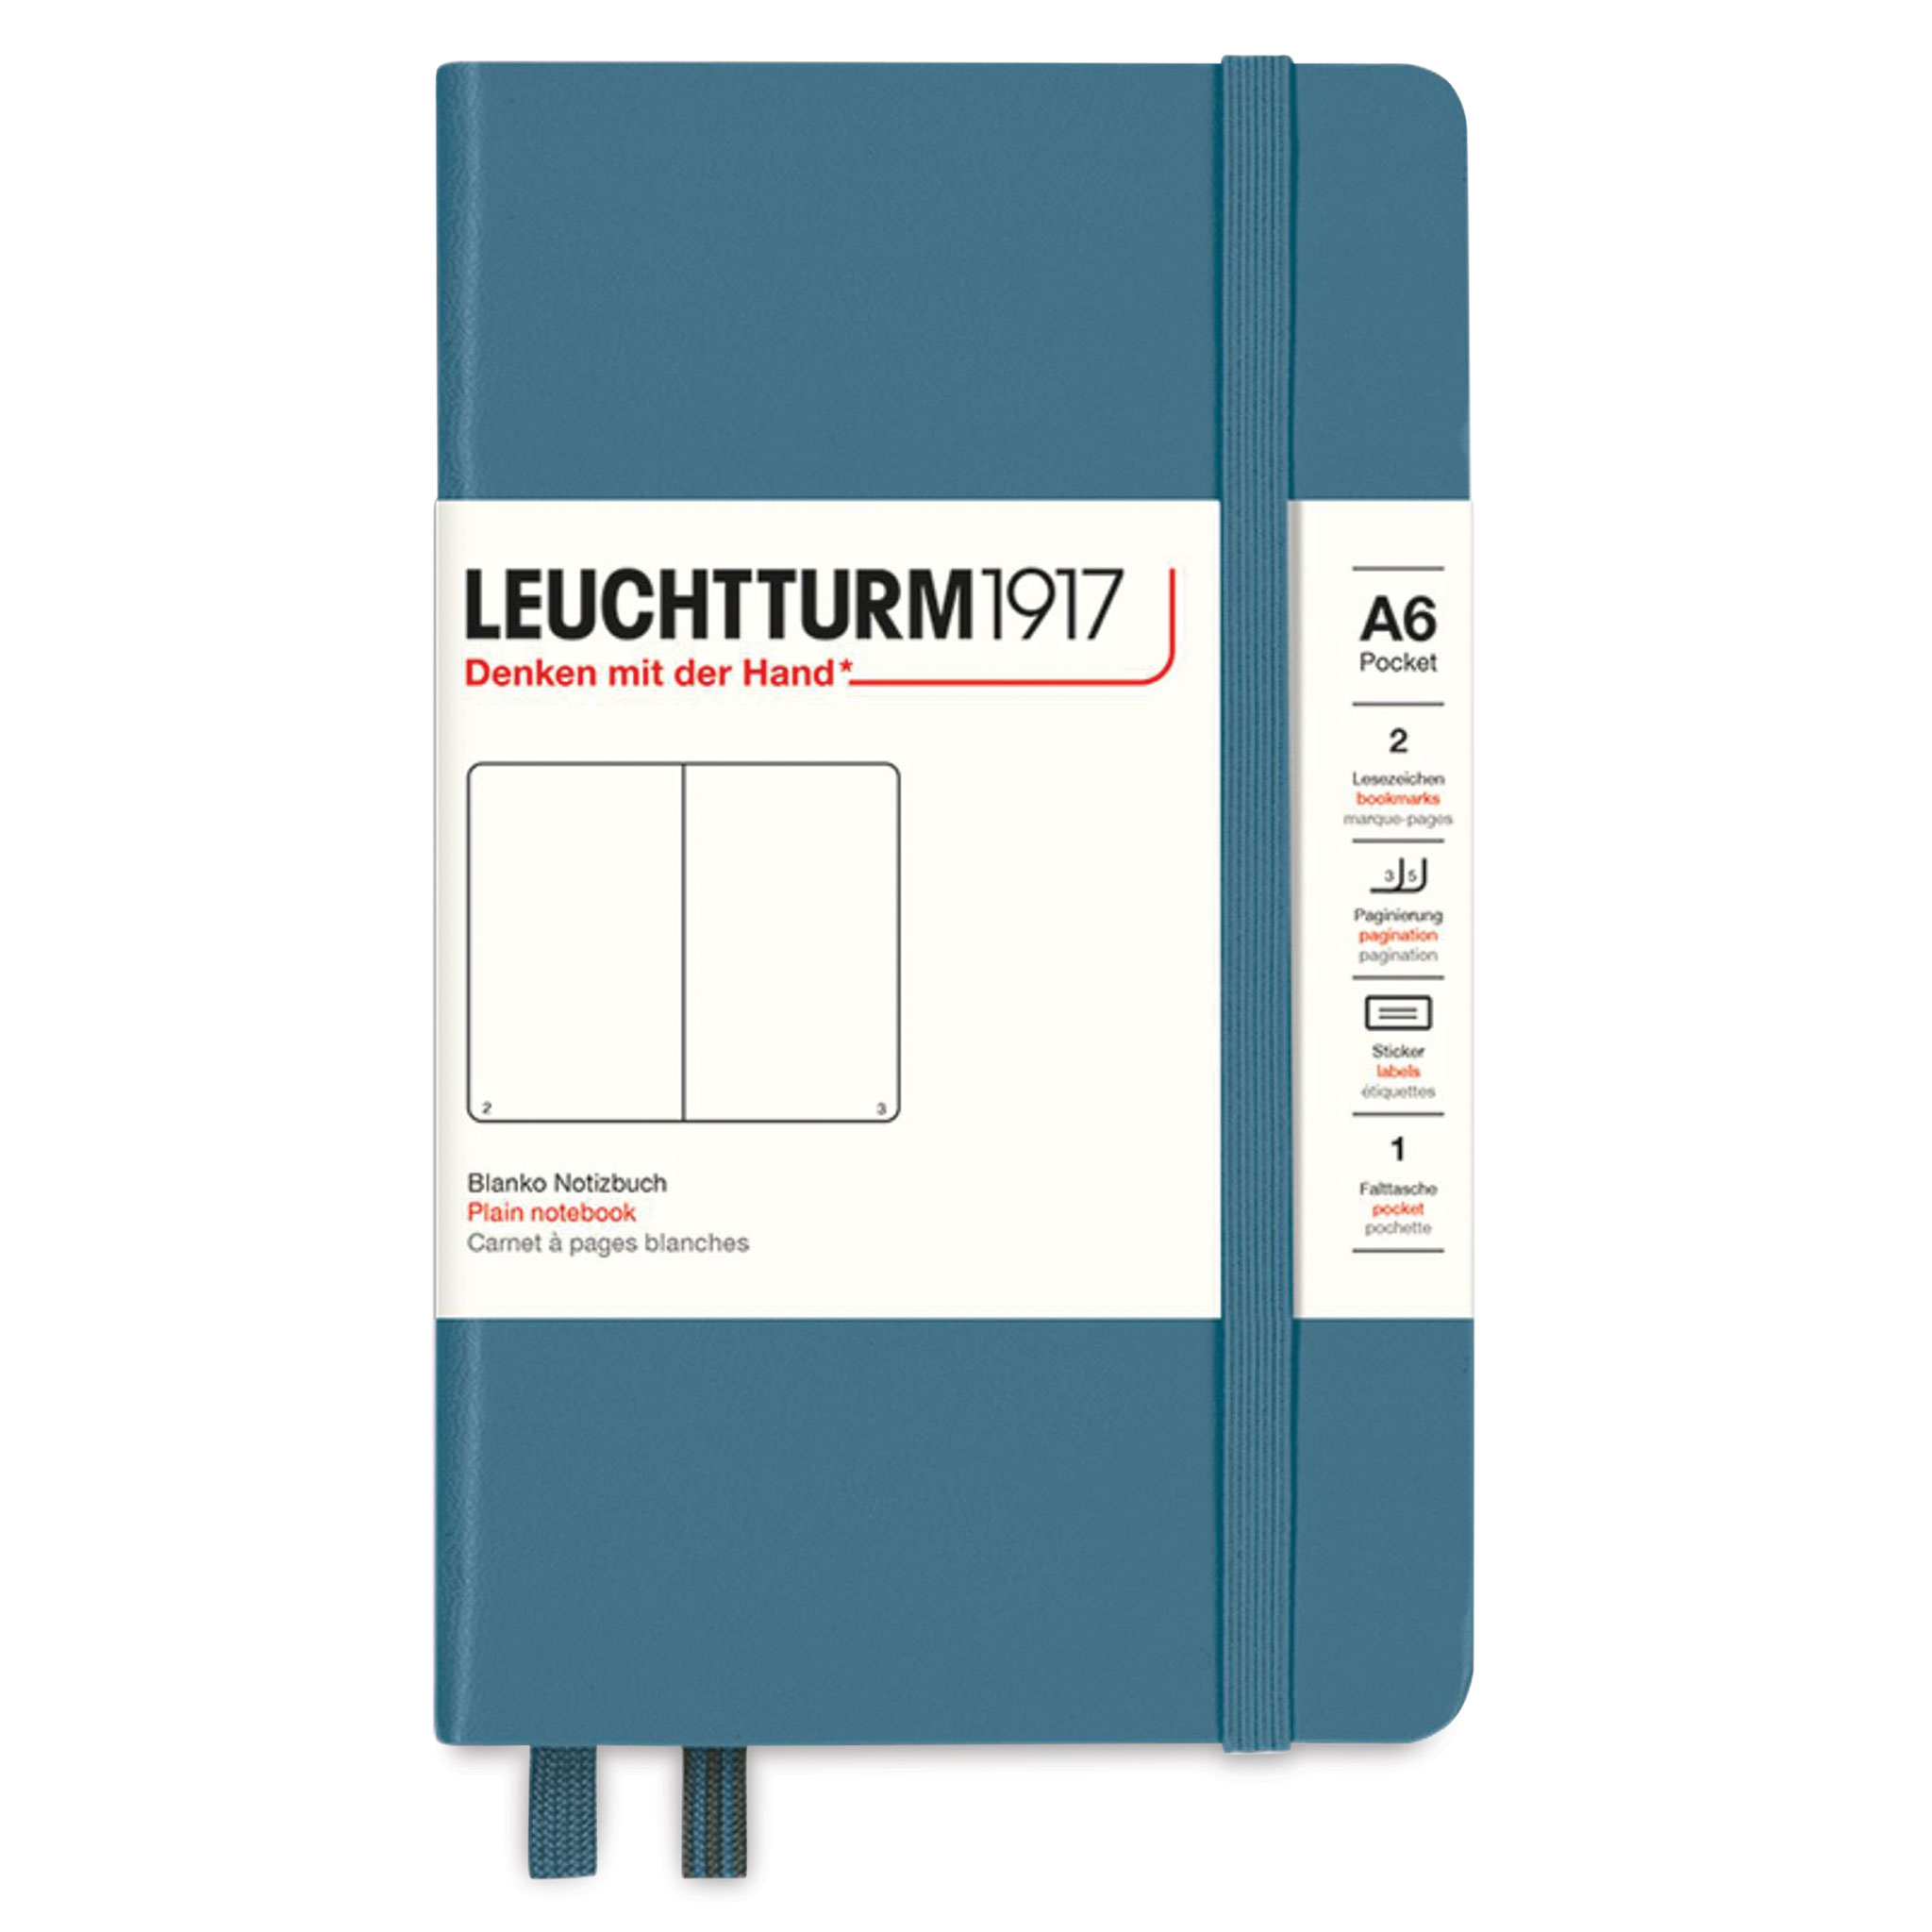 Leuchtturm 1917 A4 Blank Notebook / Sketchbook 180 G/sm 